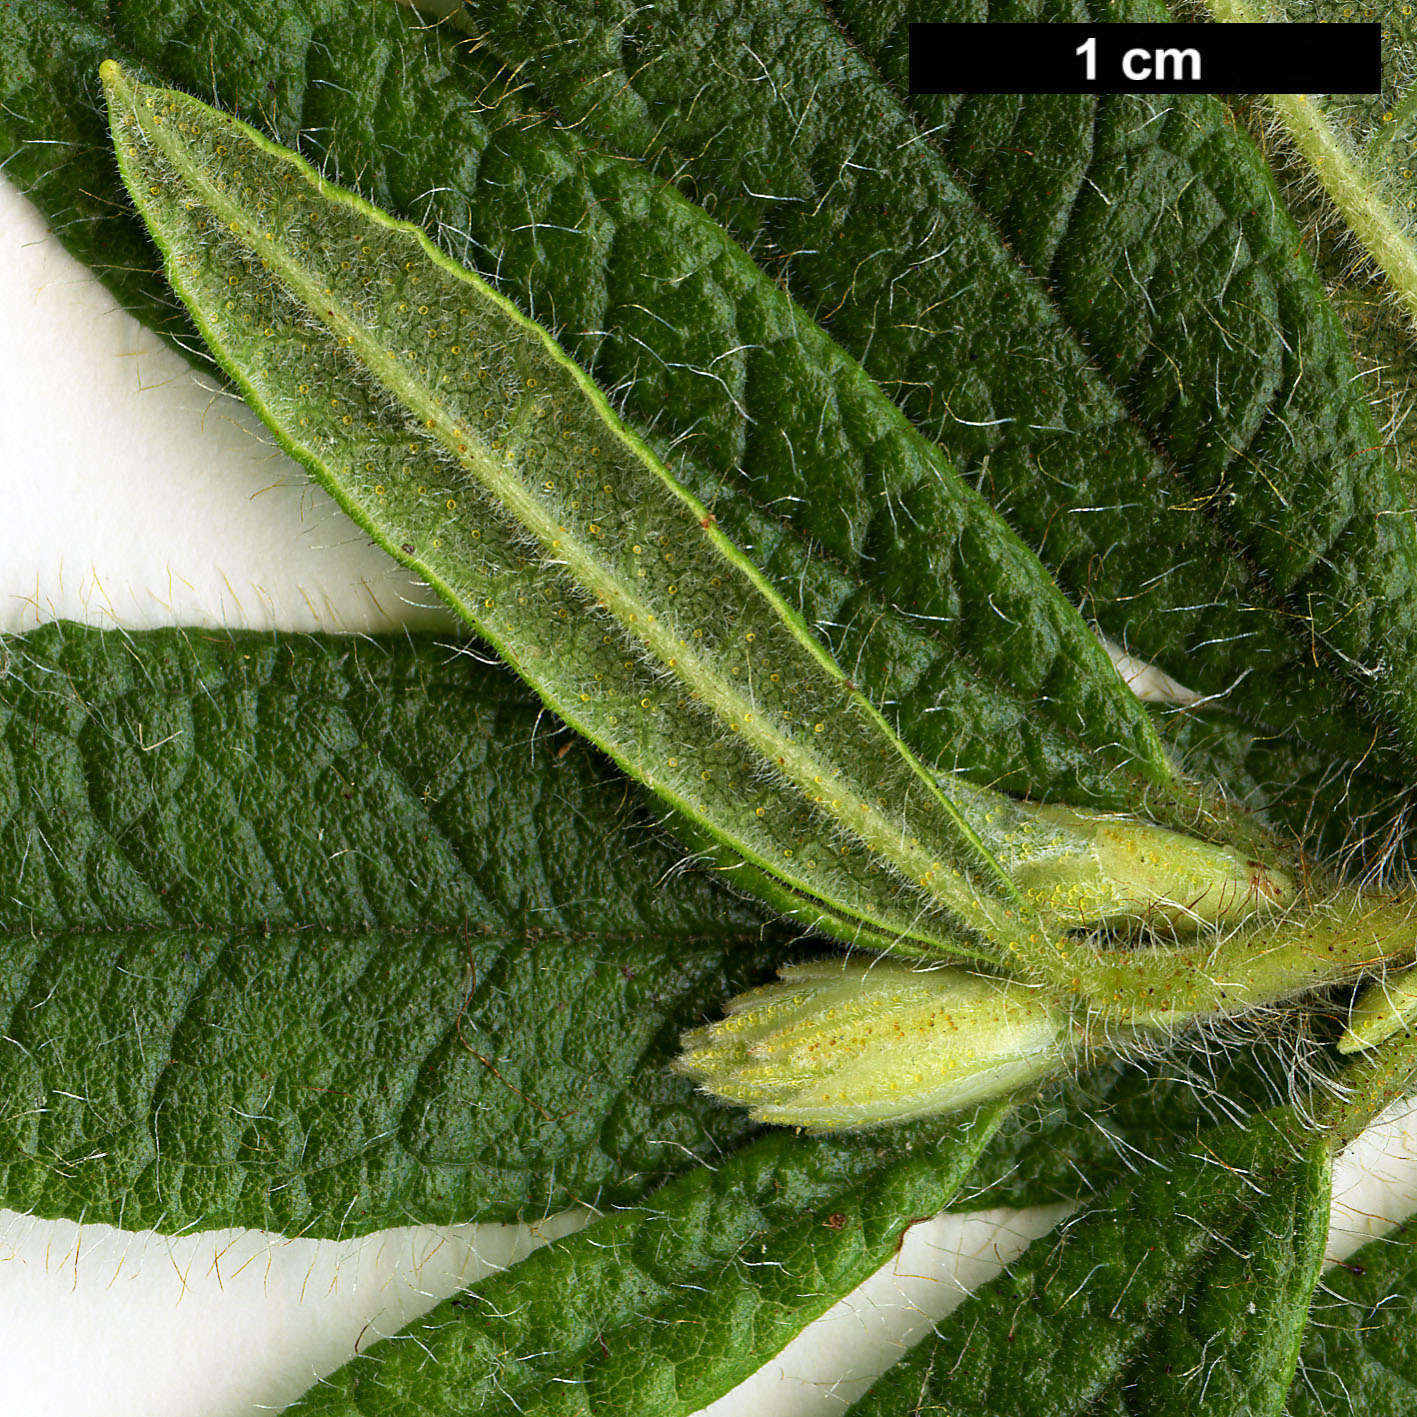 High resolution image: Family: Ericaceae - Genus: Rhododendron - Taxon: spiciferum